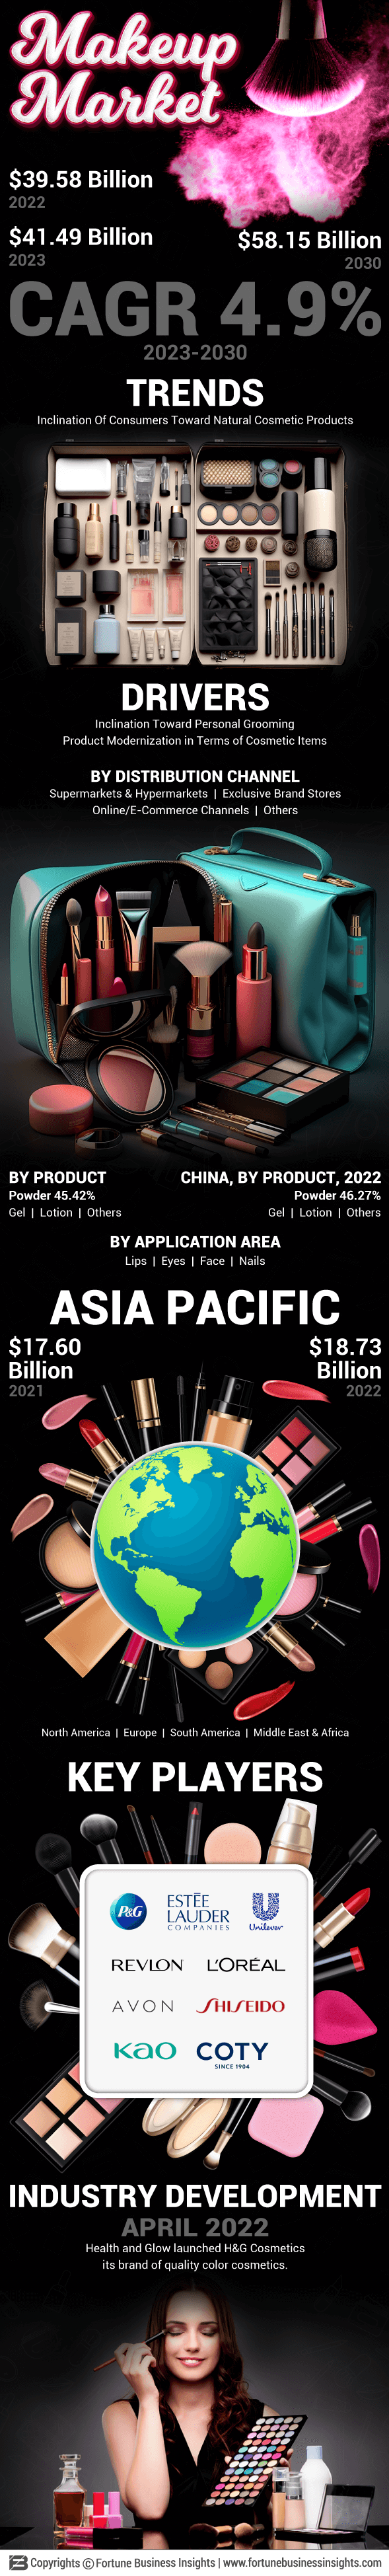 化妆品市场